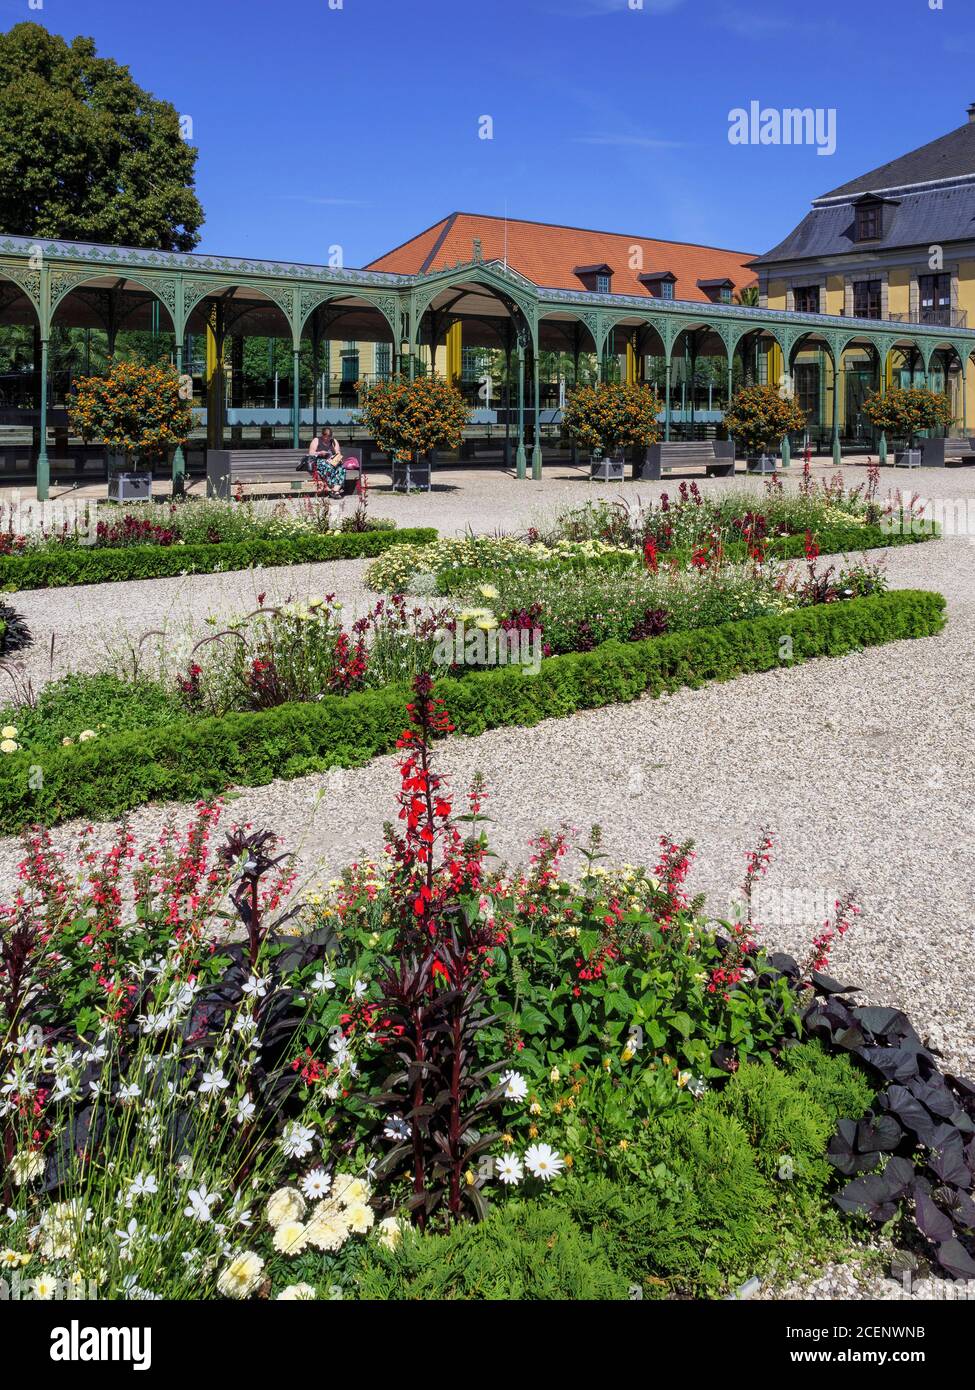 Blumengarten in Großer Garten der barocken Herrenhäuser Gärten, Hannover, Niedersachsen, Deutschland, Europa flower garden in Great Garden of baroque Stock Photo